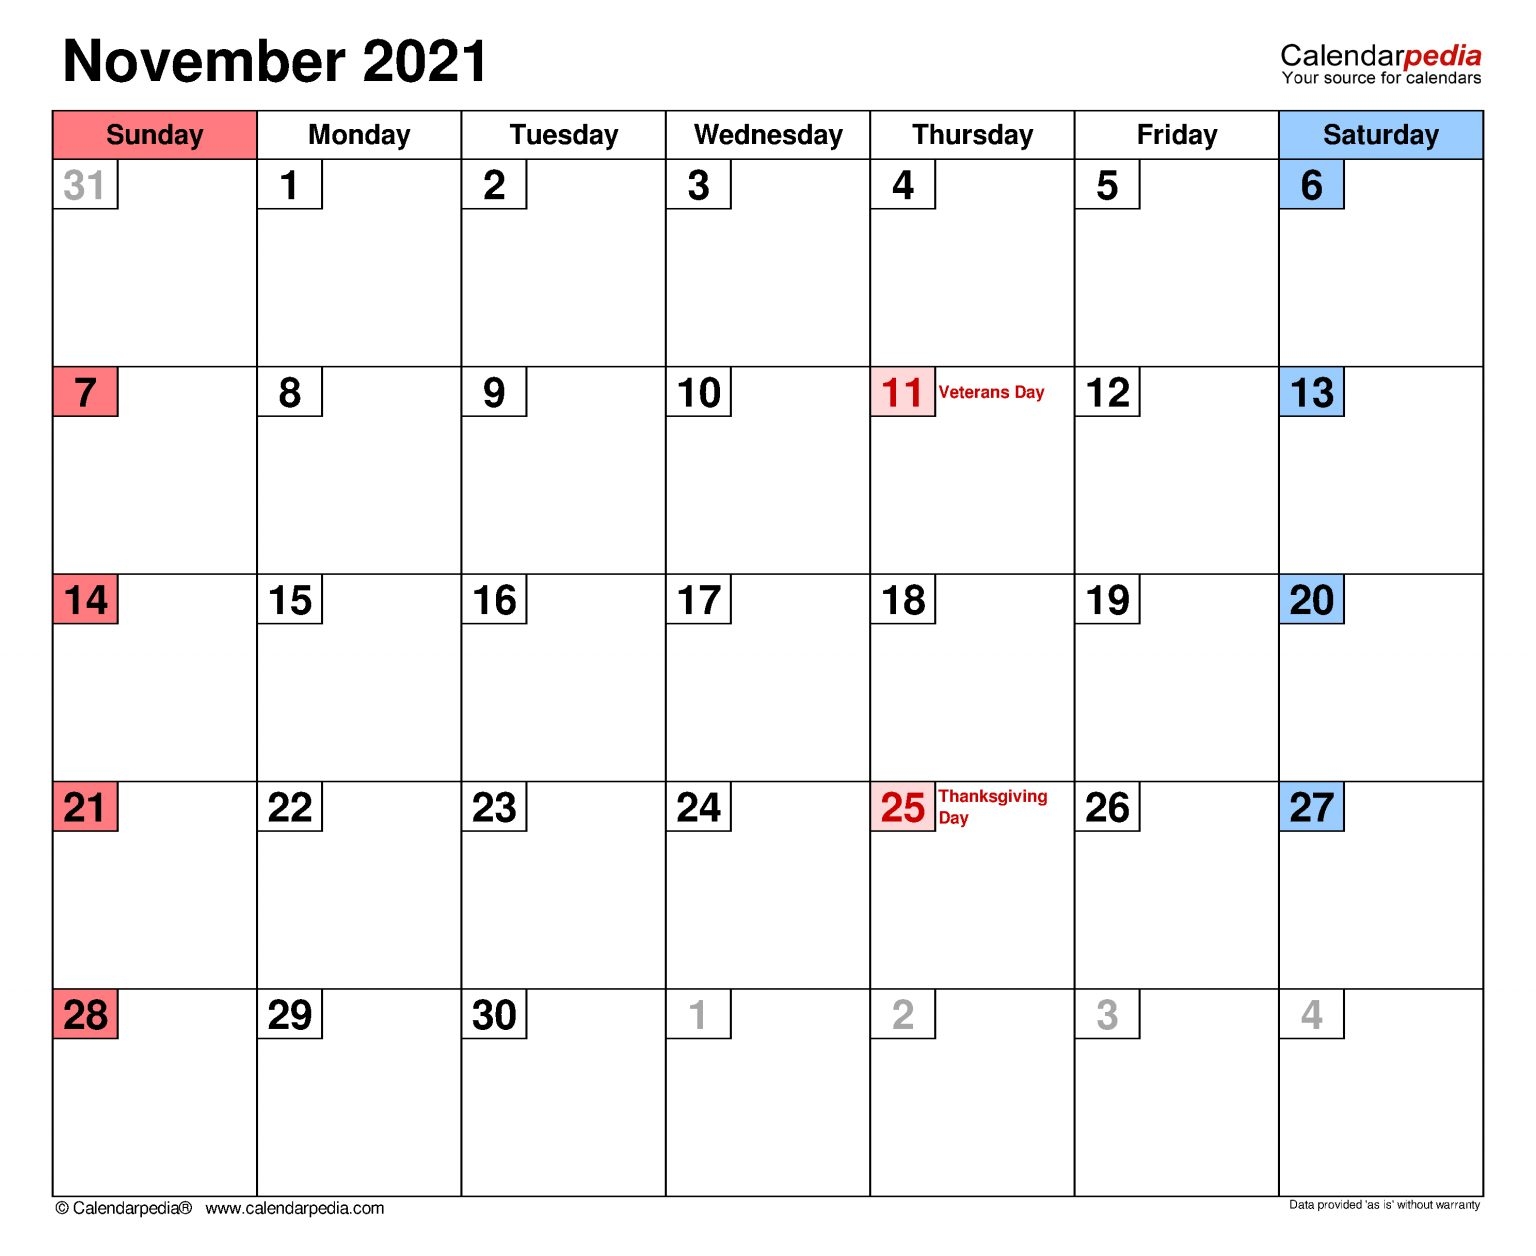 November 2021 Calendar Templates For Word Excel And Pdf November 2021 Calendar Pdf